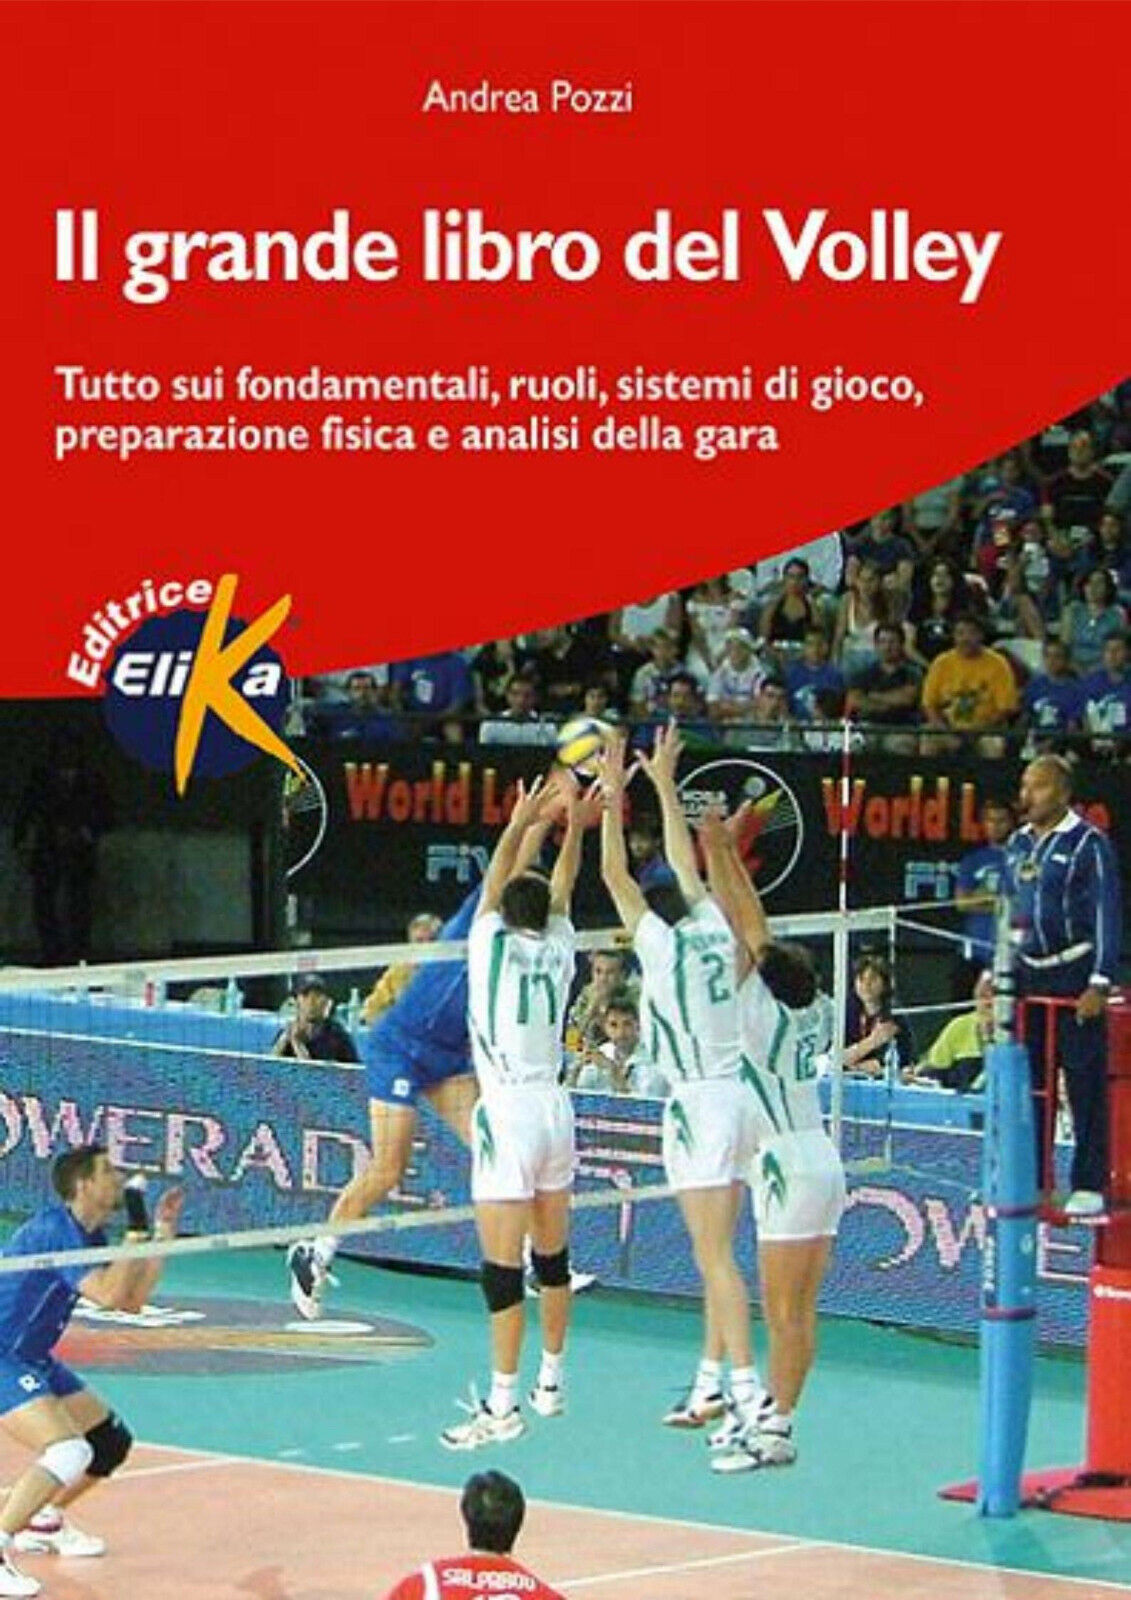 Il grande libro del volley - Andrea Pozzi - Elika, 2005